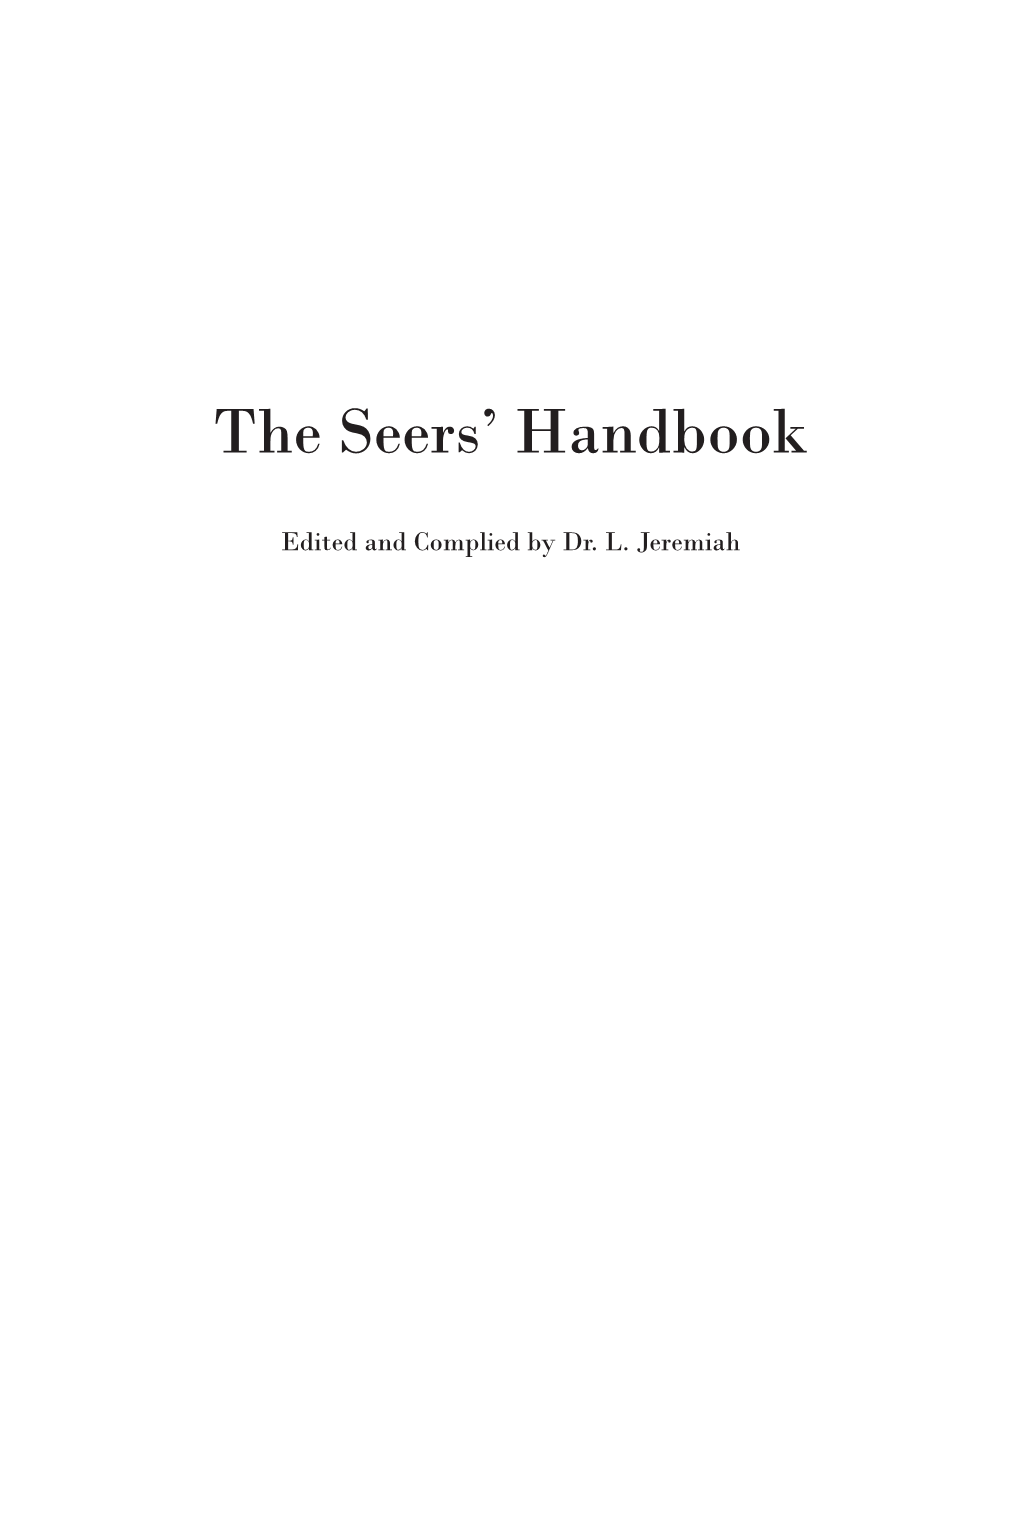 The Seers' Handbook